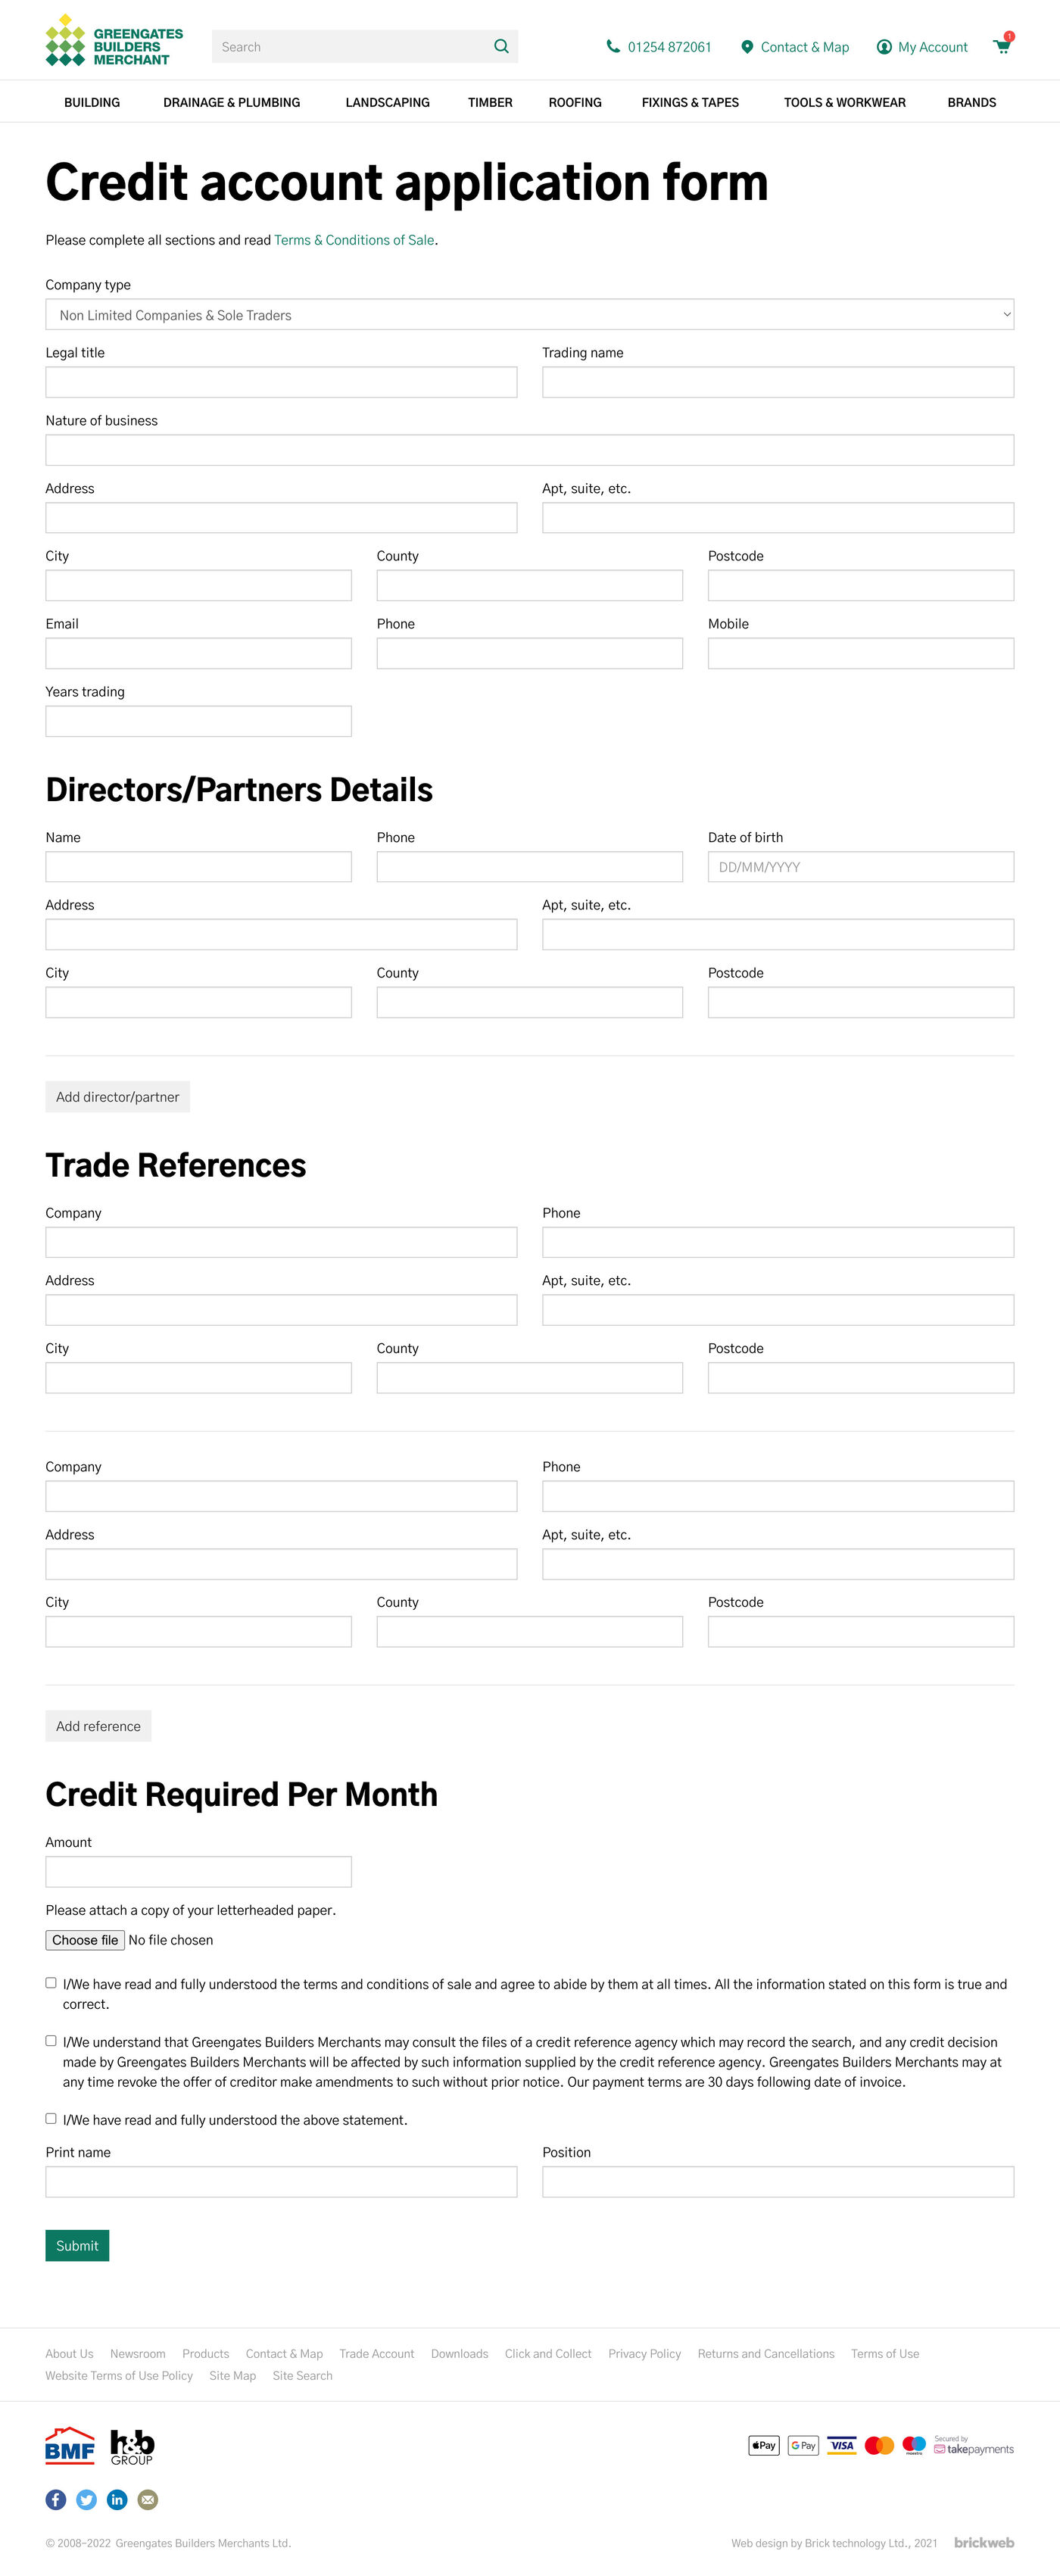 Greengates Builders Merchants Credit account application form